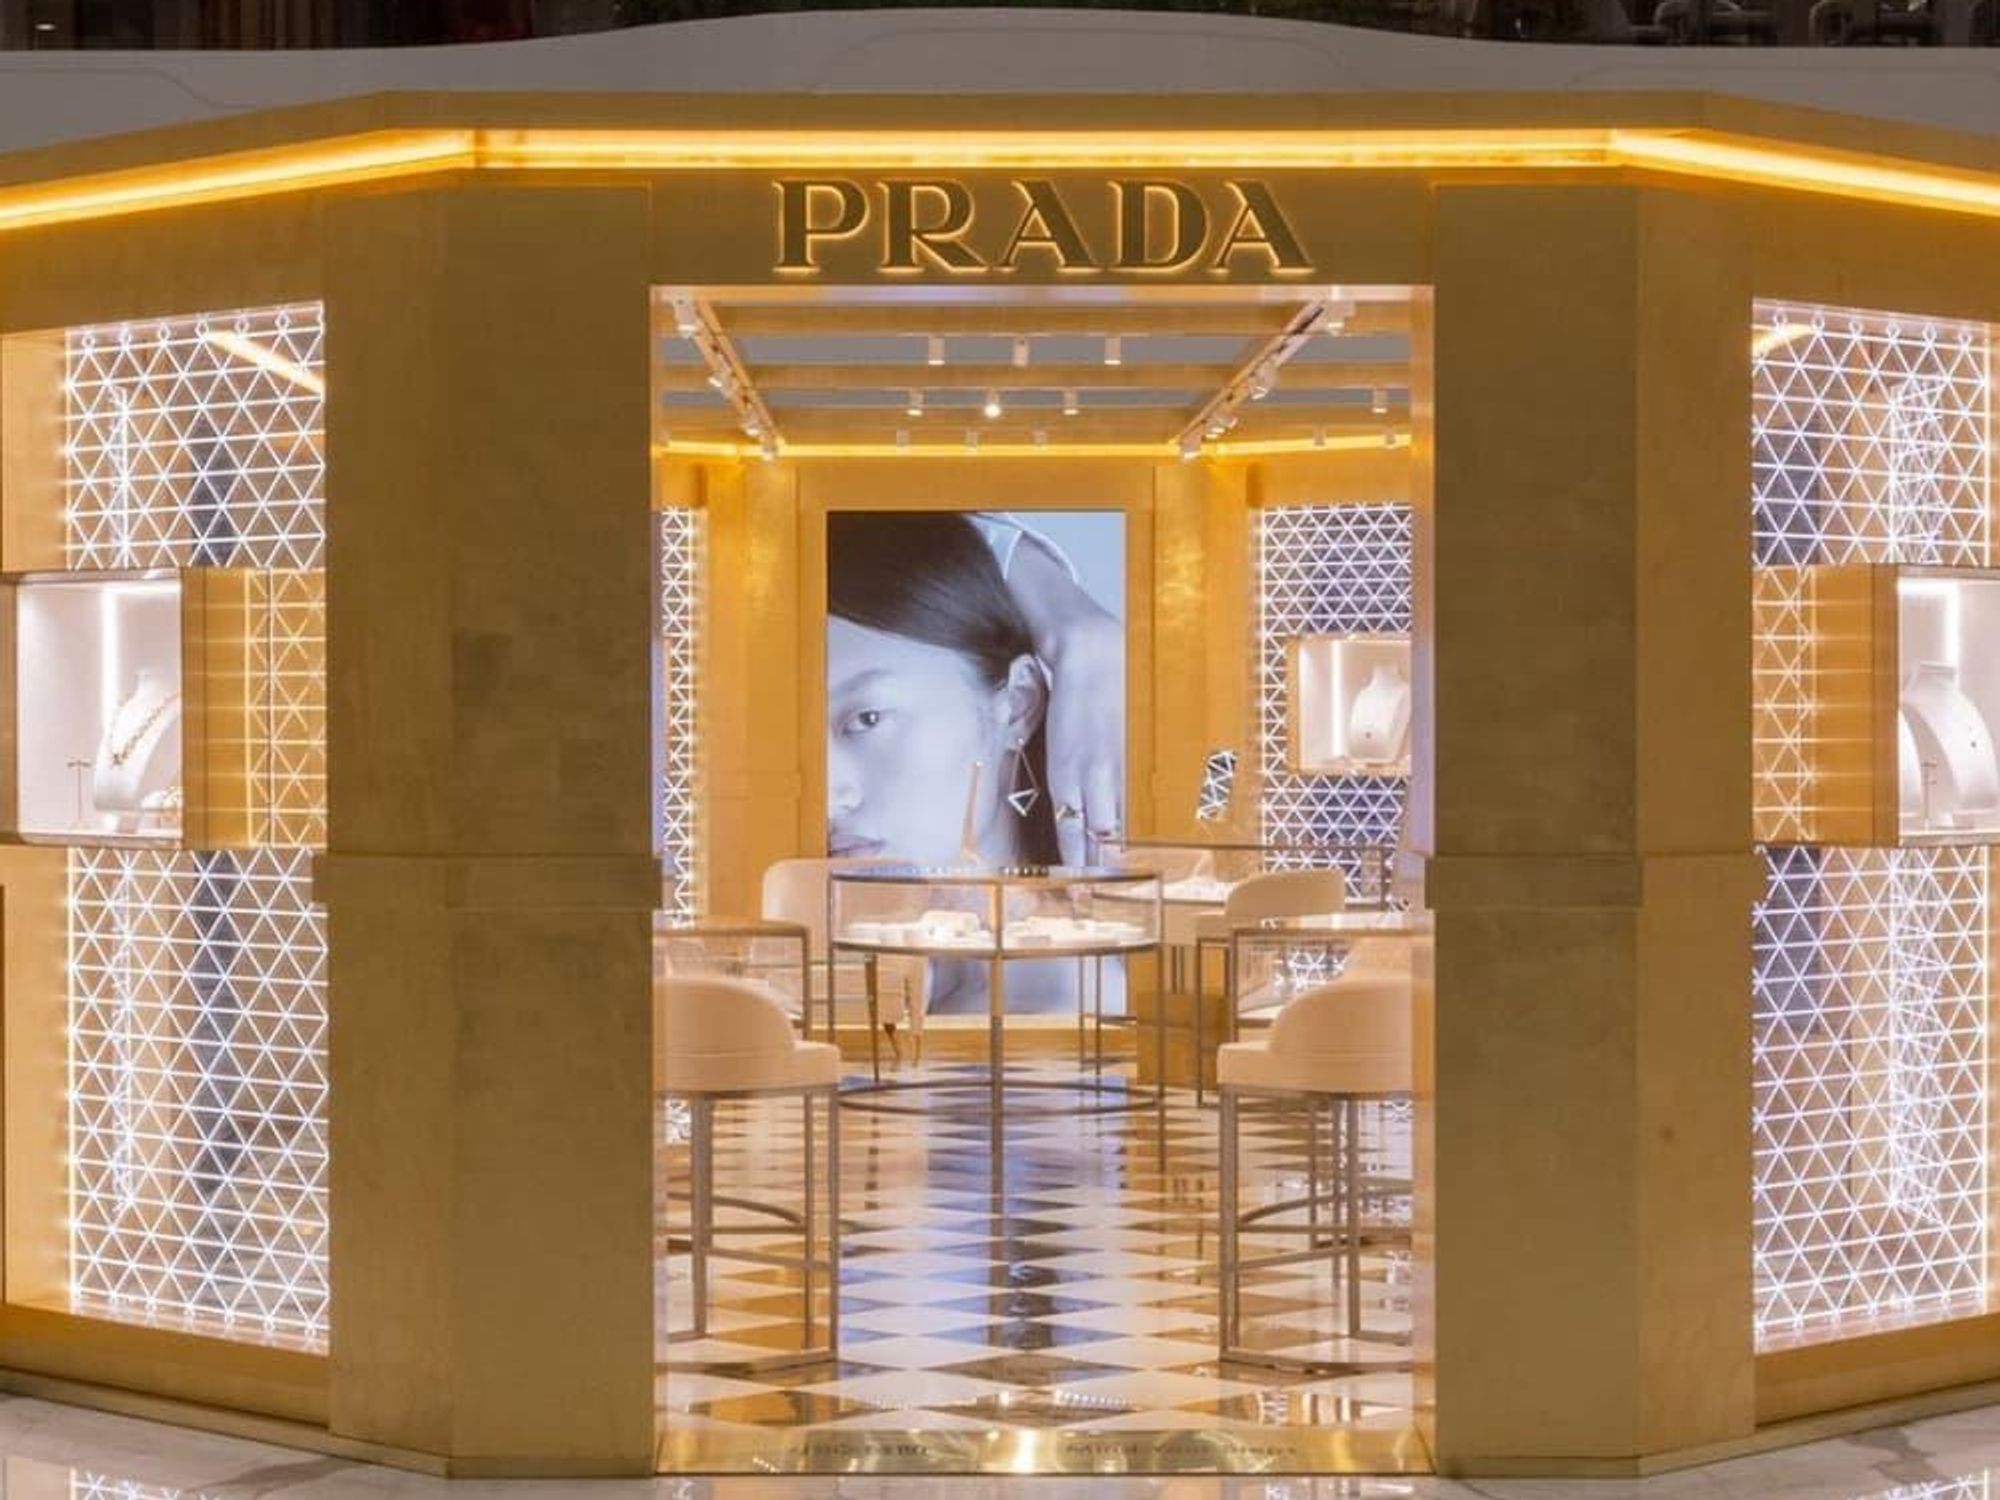 Prada's strategy